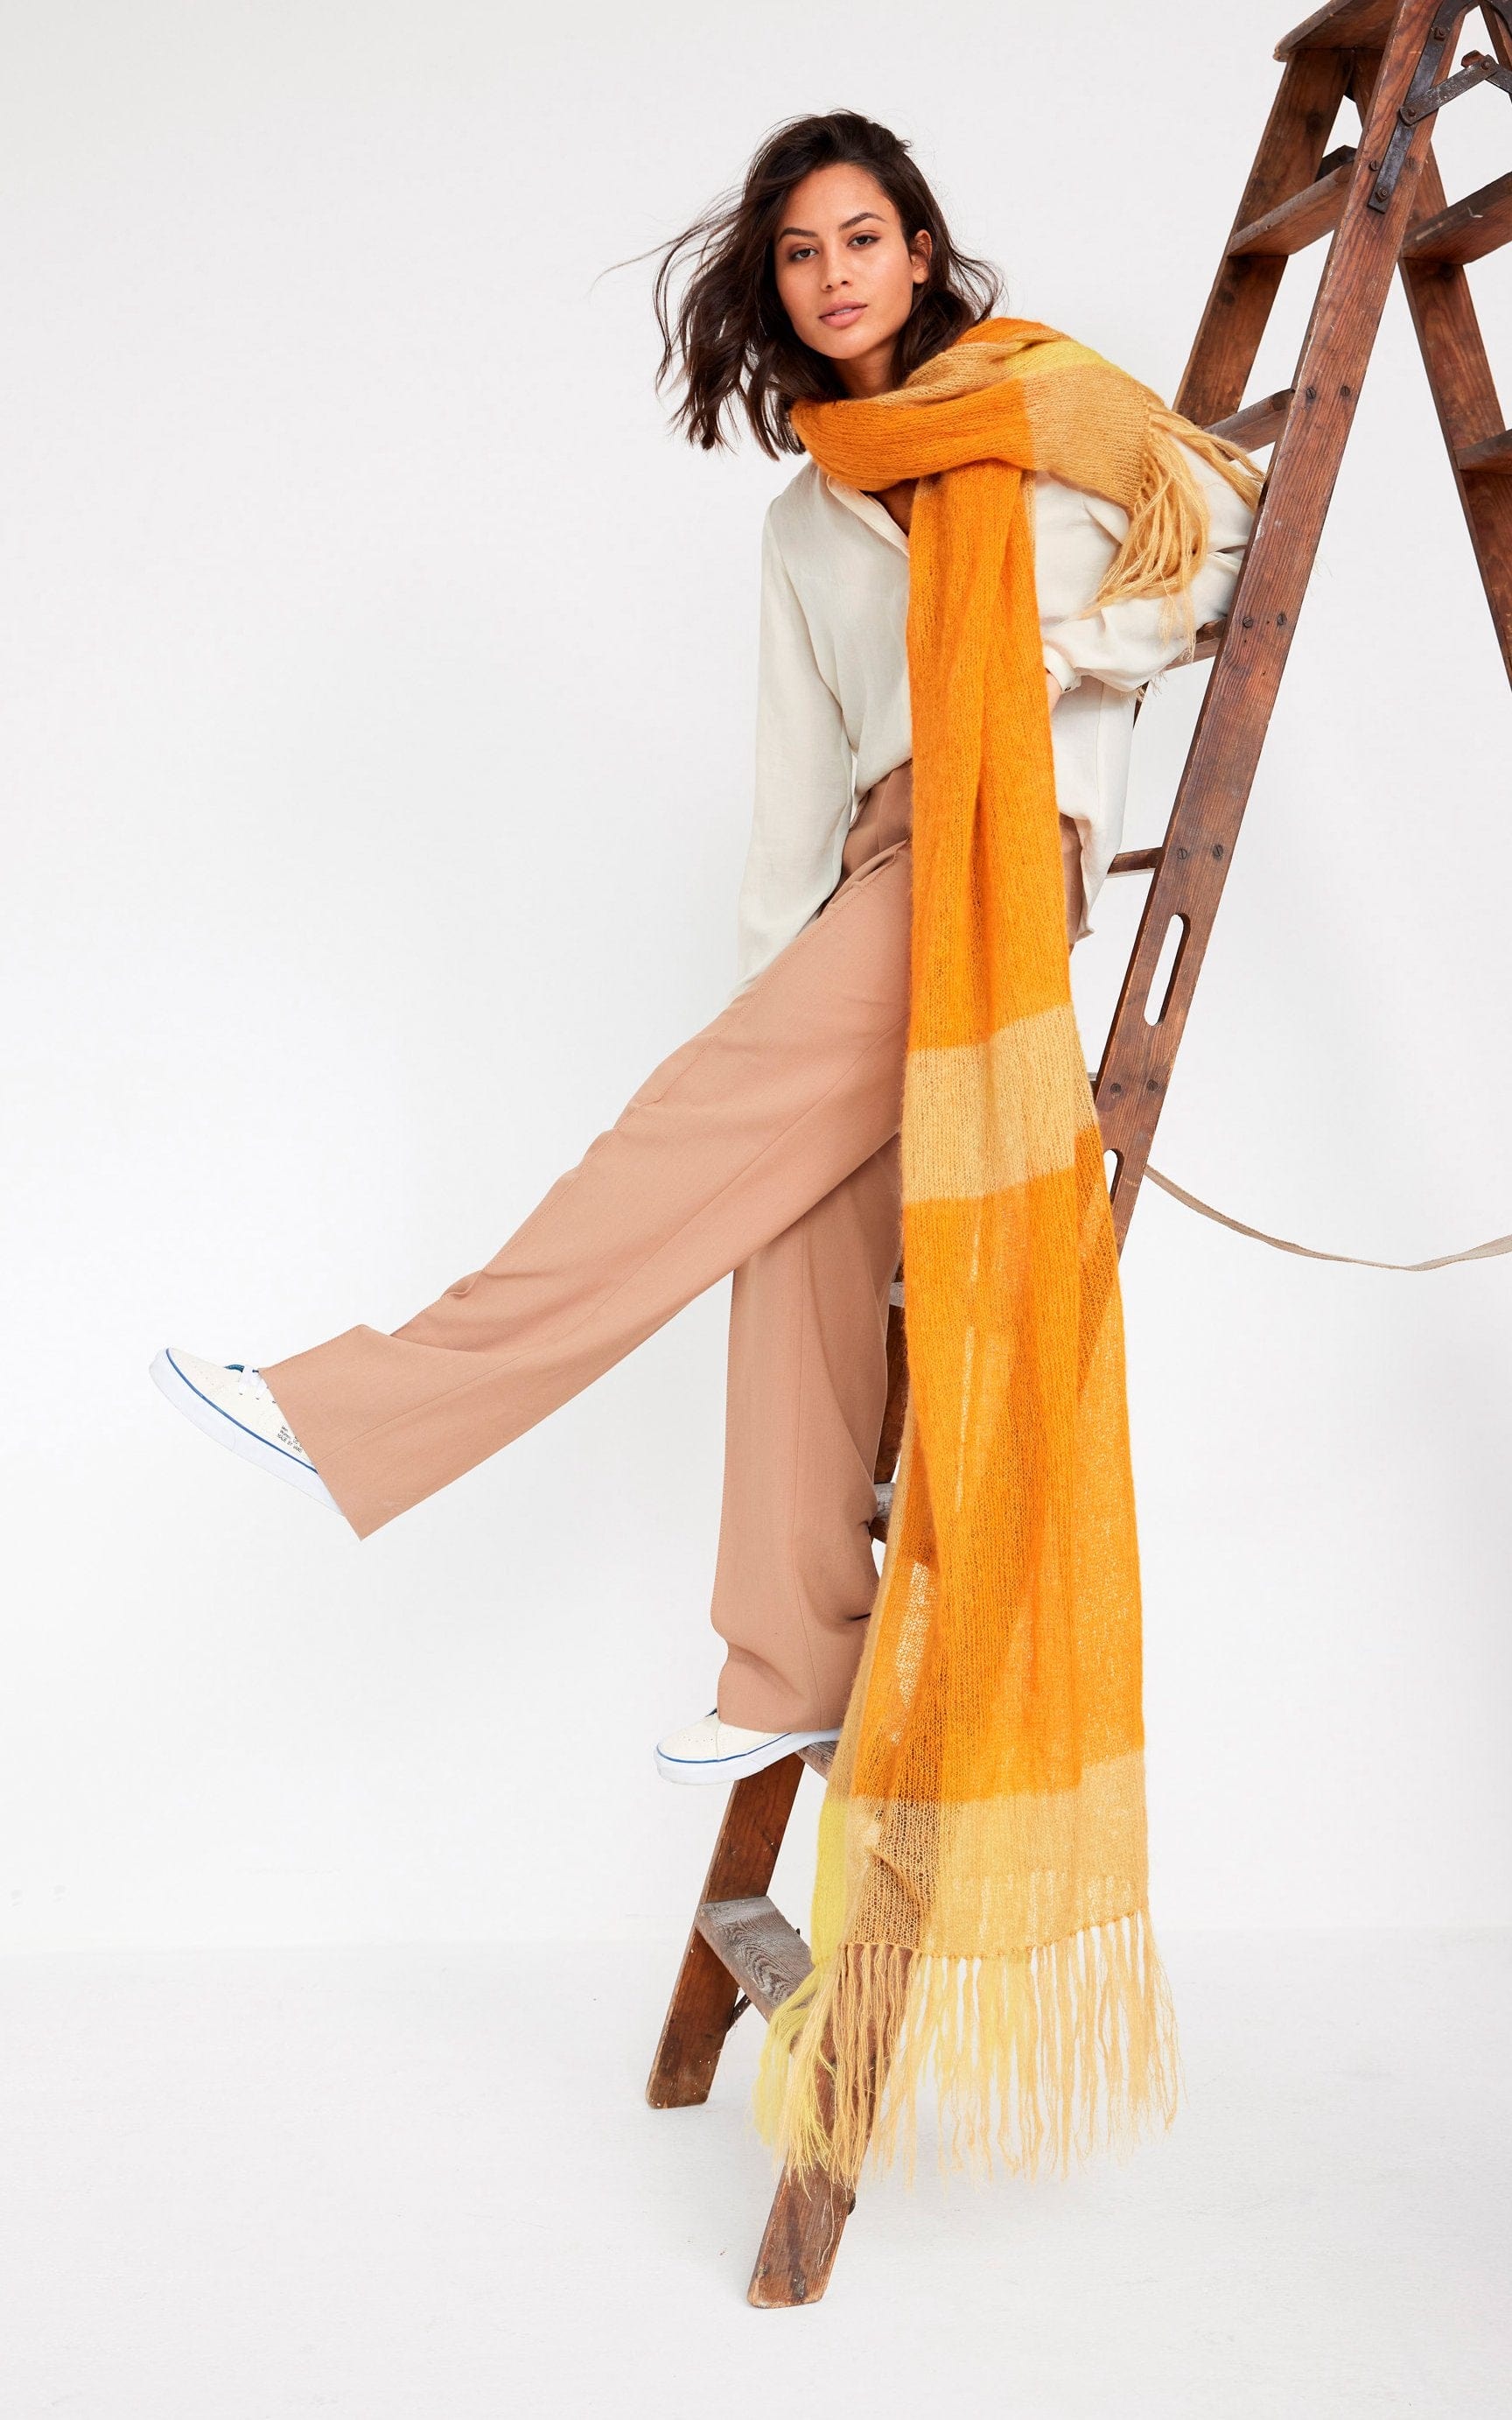 Schal mit Fransen - SILKHAIR - Strickset von LANA GROSSA jetzt online kaufen bei OONIQUE